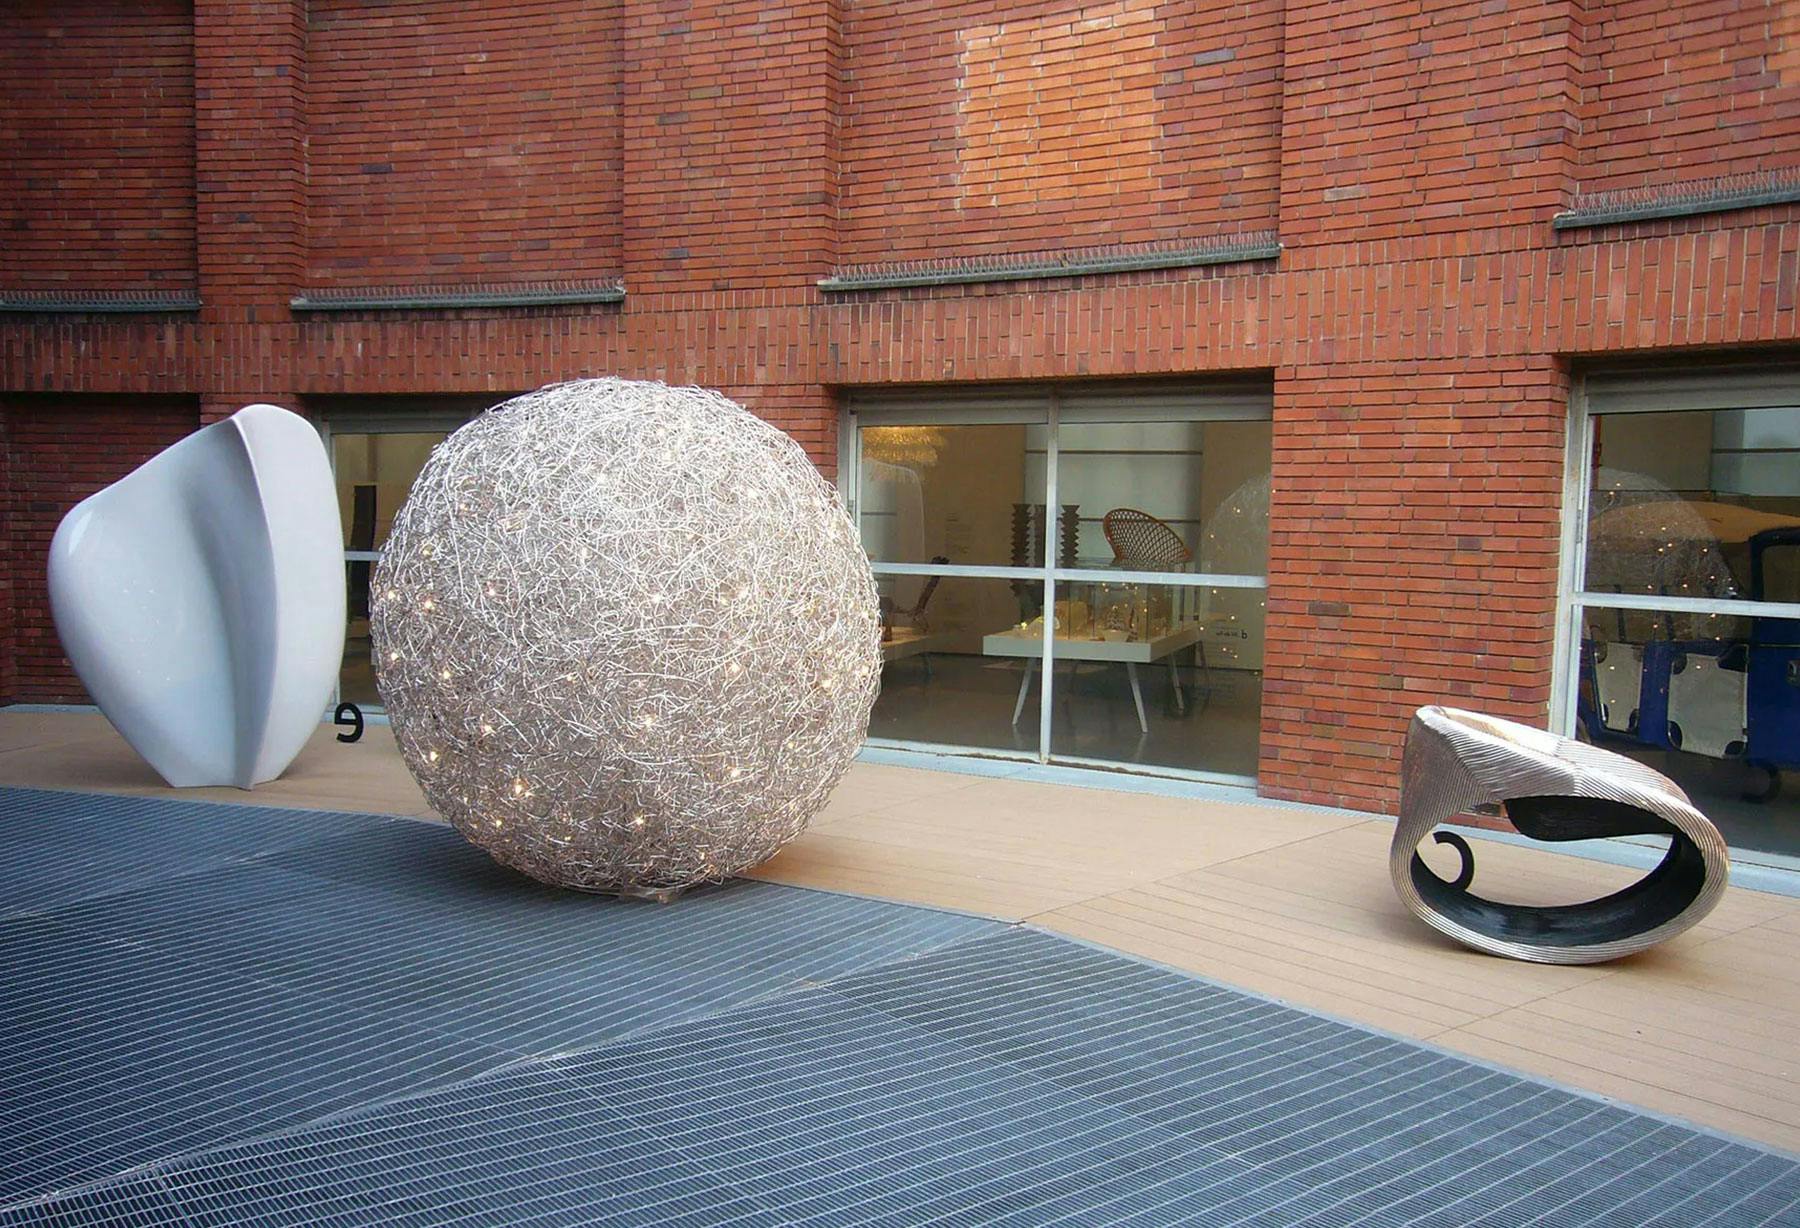 <p>К Триеннале в Милане для выставки «Fuori Serie» был изготовлен светильник, содержащий немыслимое количество алюминиевой проволоки и множество источников света, напоминающий модель вселенной в миниатюре.</p>
